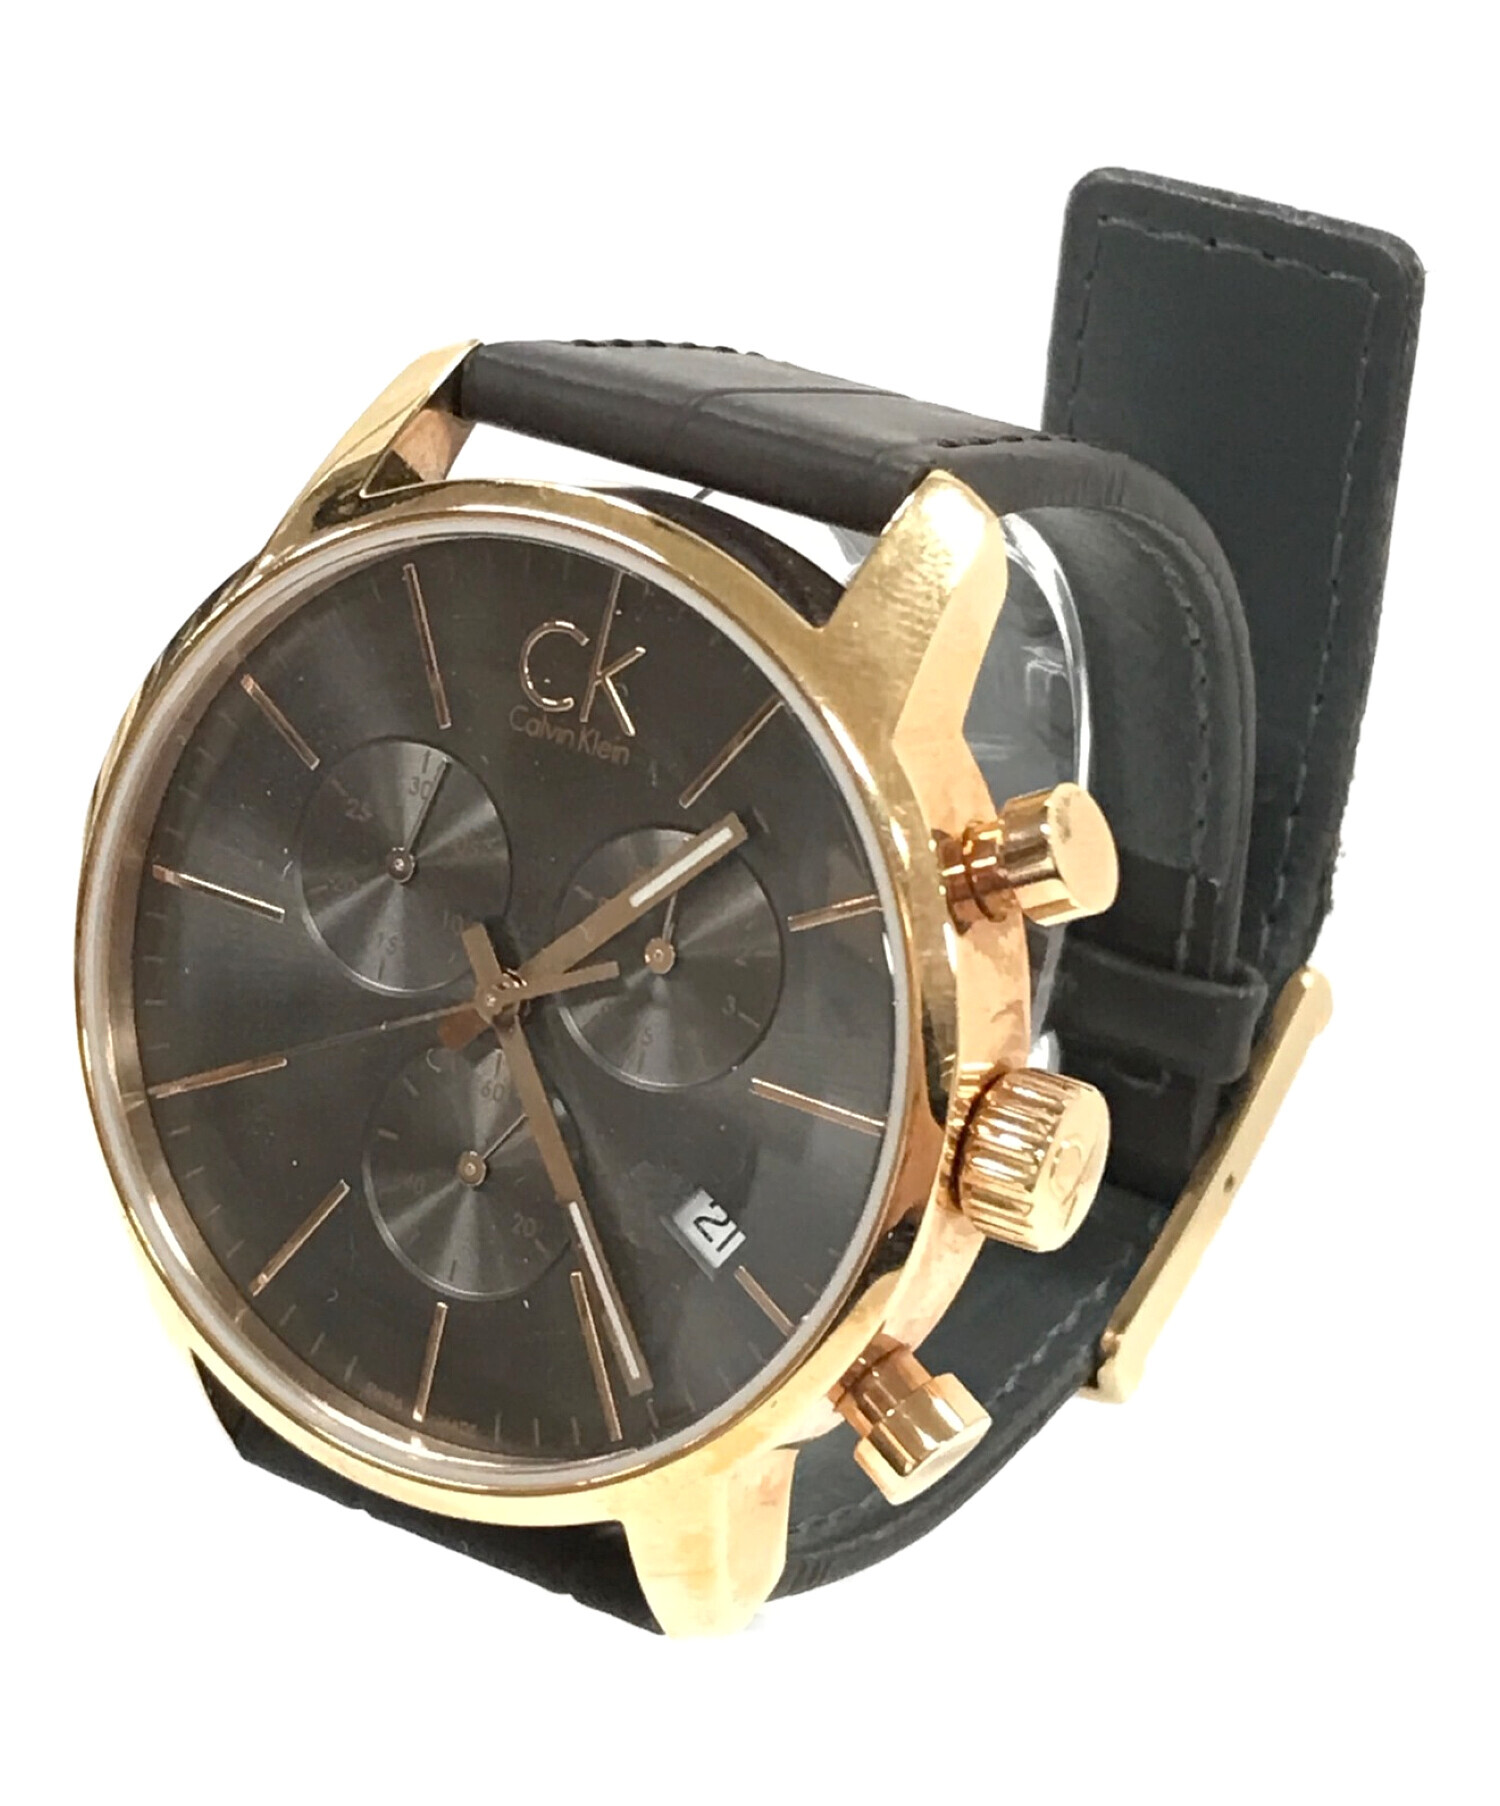 Calvin Klein (カルバンクライン) 腕時計 クロノグラフ ブラック サイズ:実寸サイズにてご確認ください。